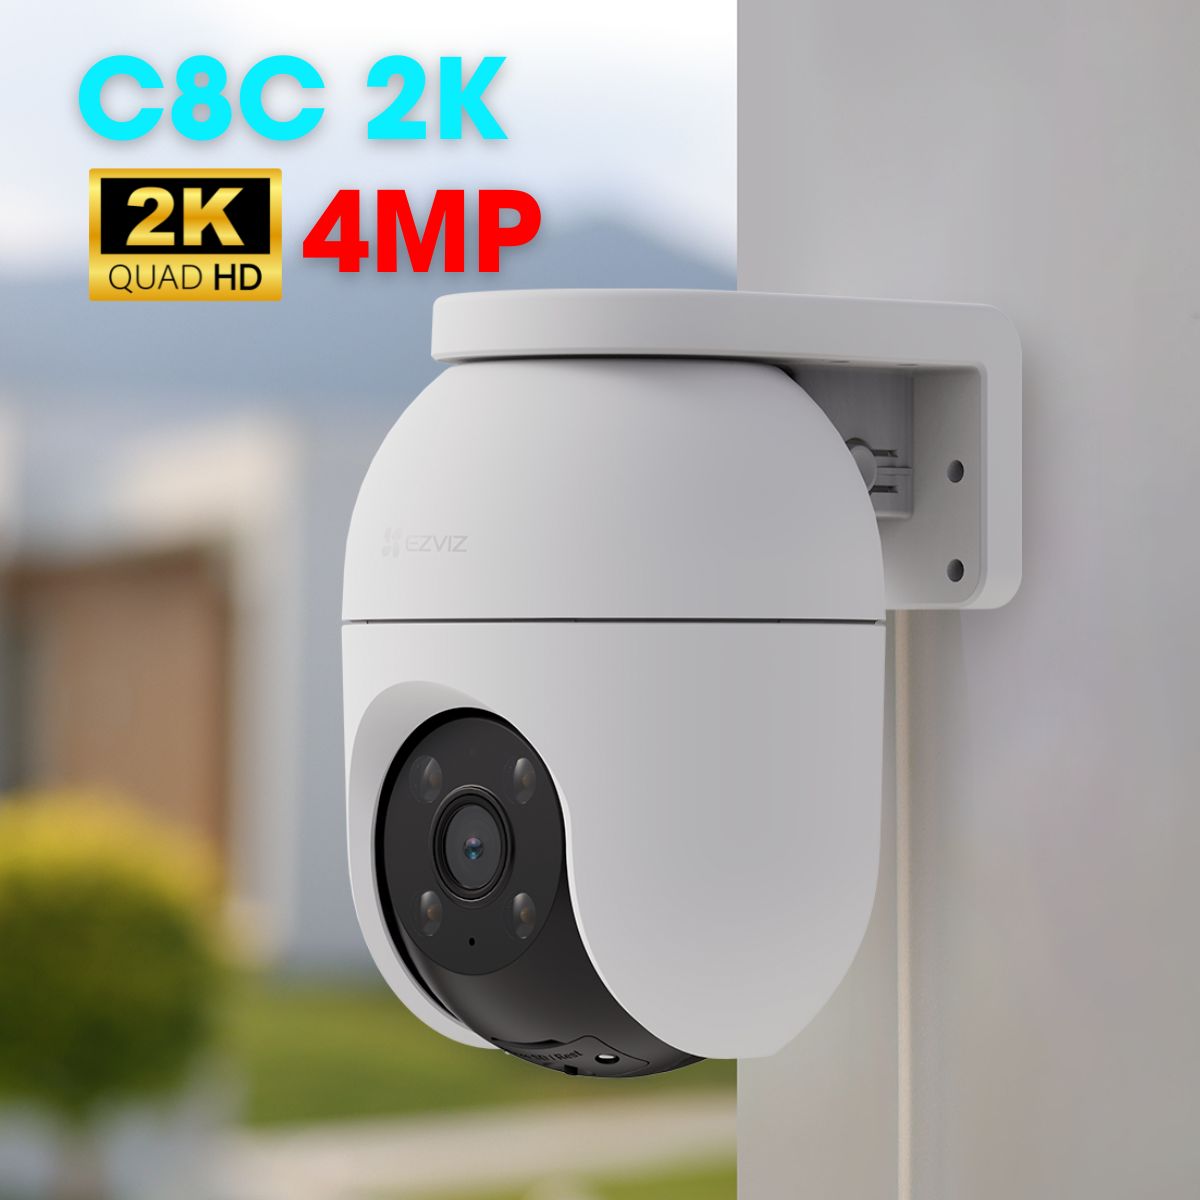 Camera wifi Ezviz C8C 2K 4MP, quay quét, đàm thoại 2 chiều, hồng ngoại 30m, cảnh báo chủ động đèn và còi